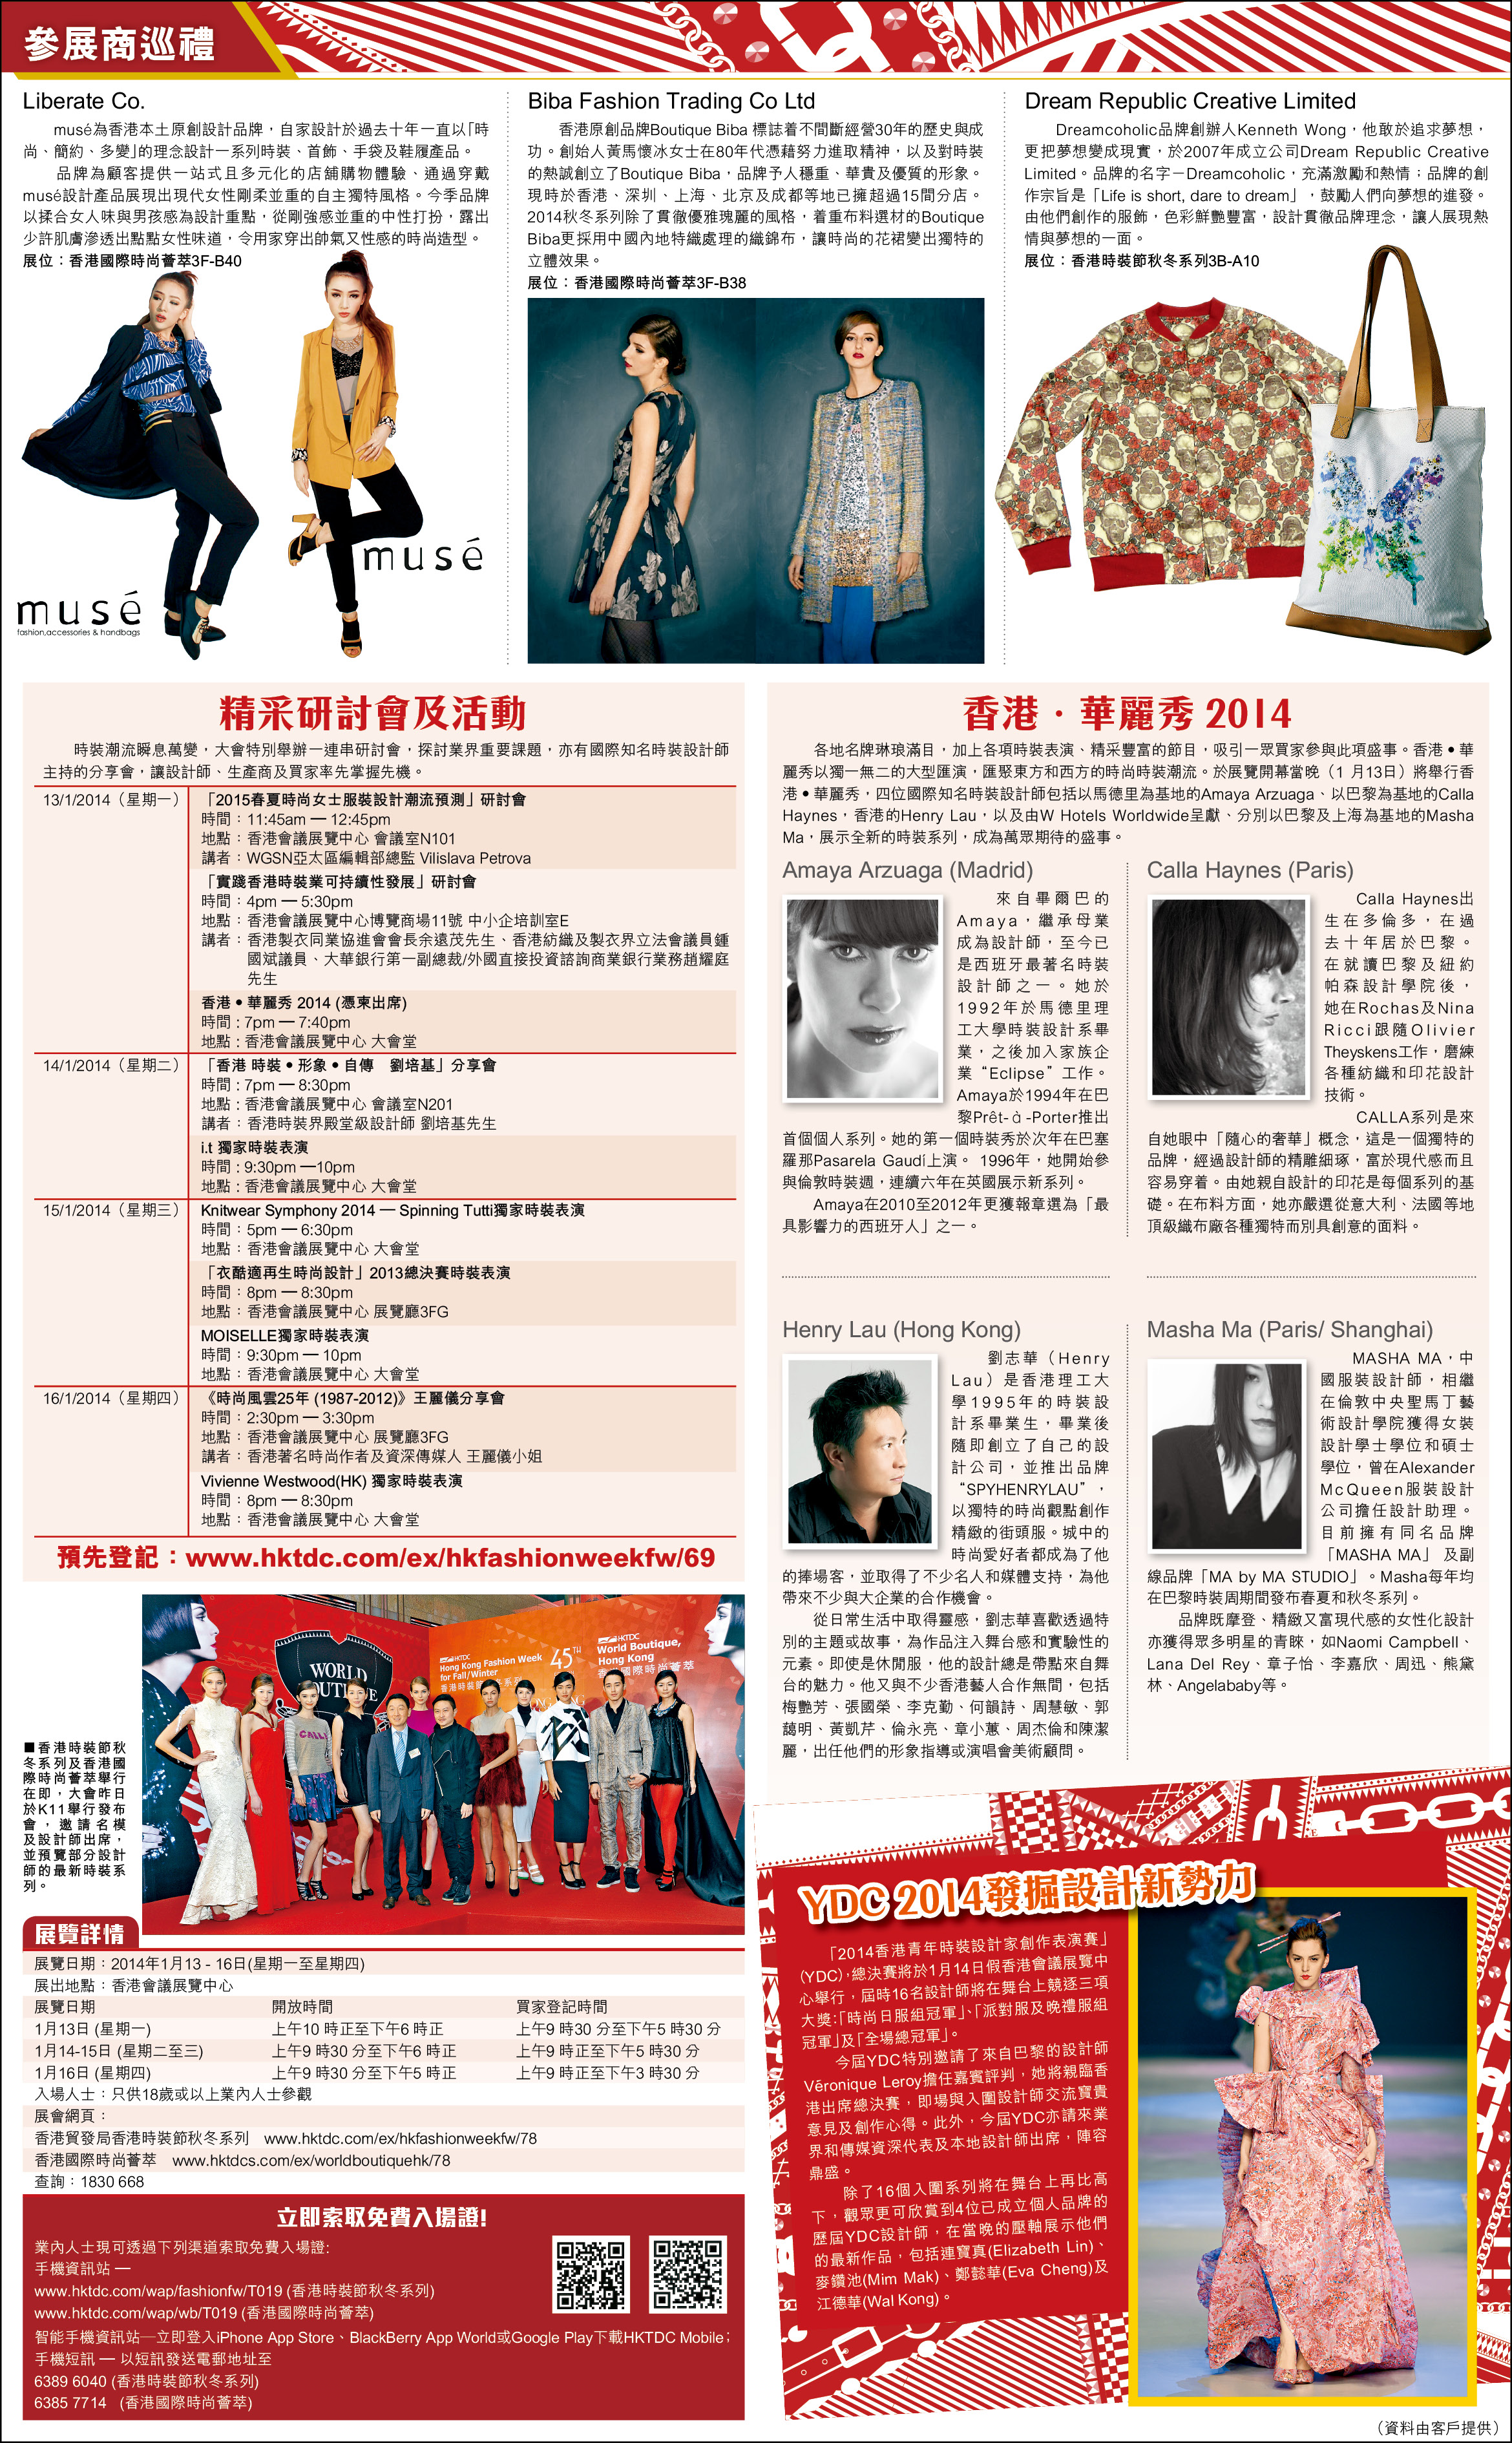 設計師kenneth wong之媒體報導: 於HKTDC 時裝週接受星島日報採訪